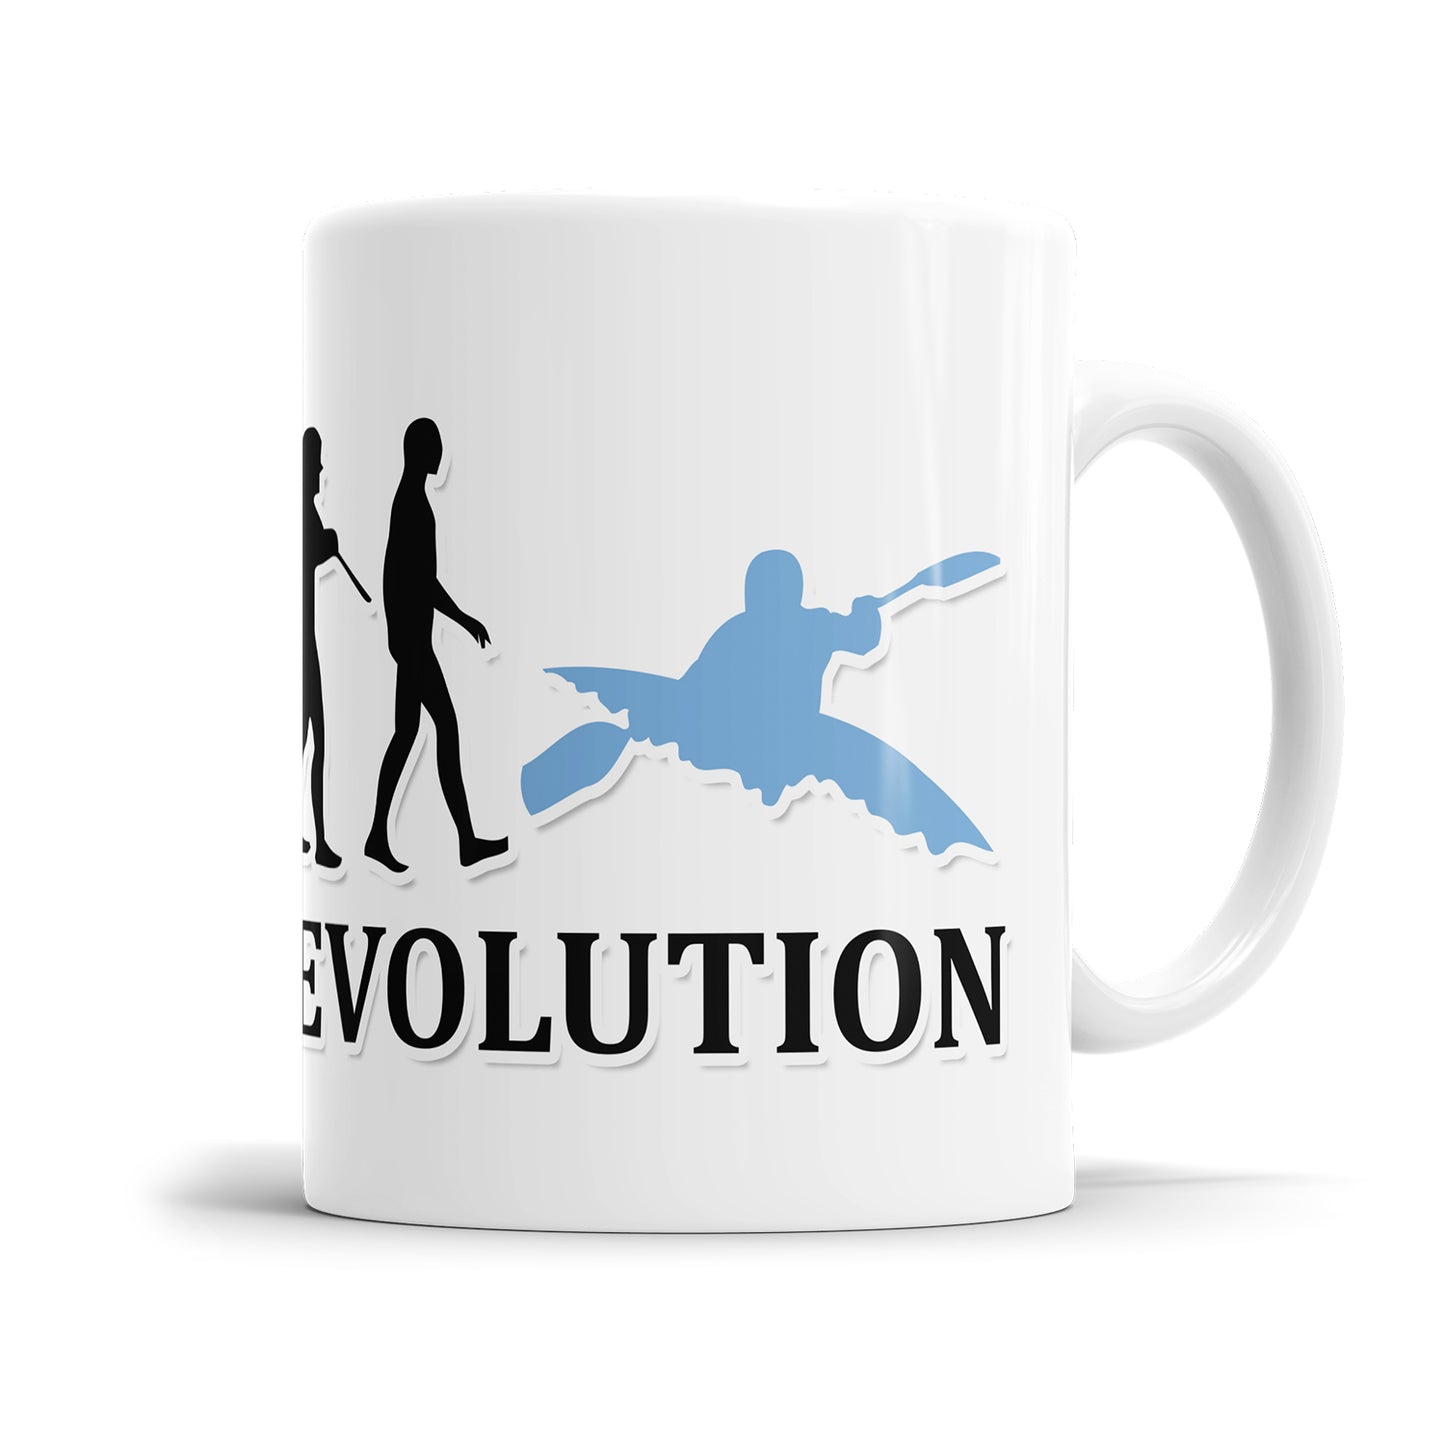 Kajak Evolution Tasse - Geschenkidee für Kajakfahrer